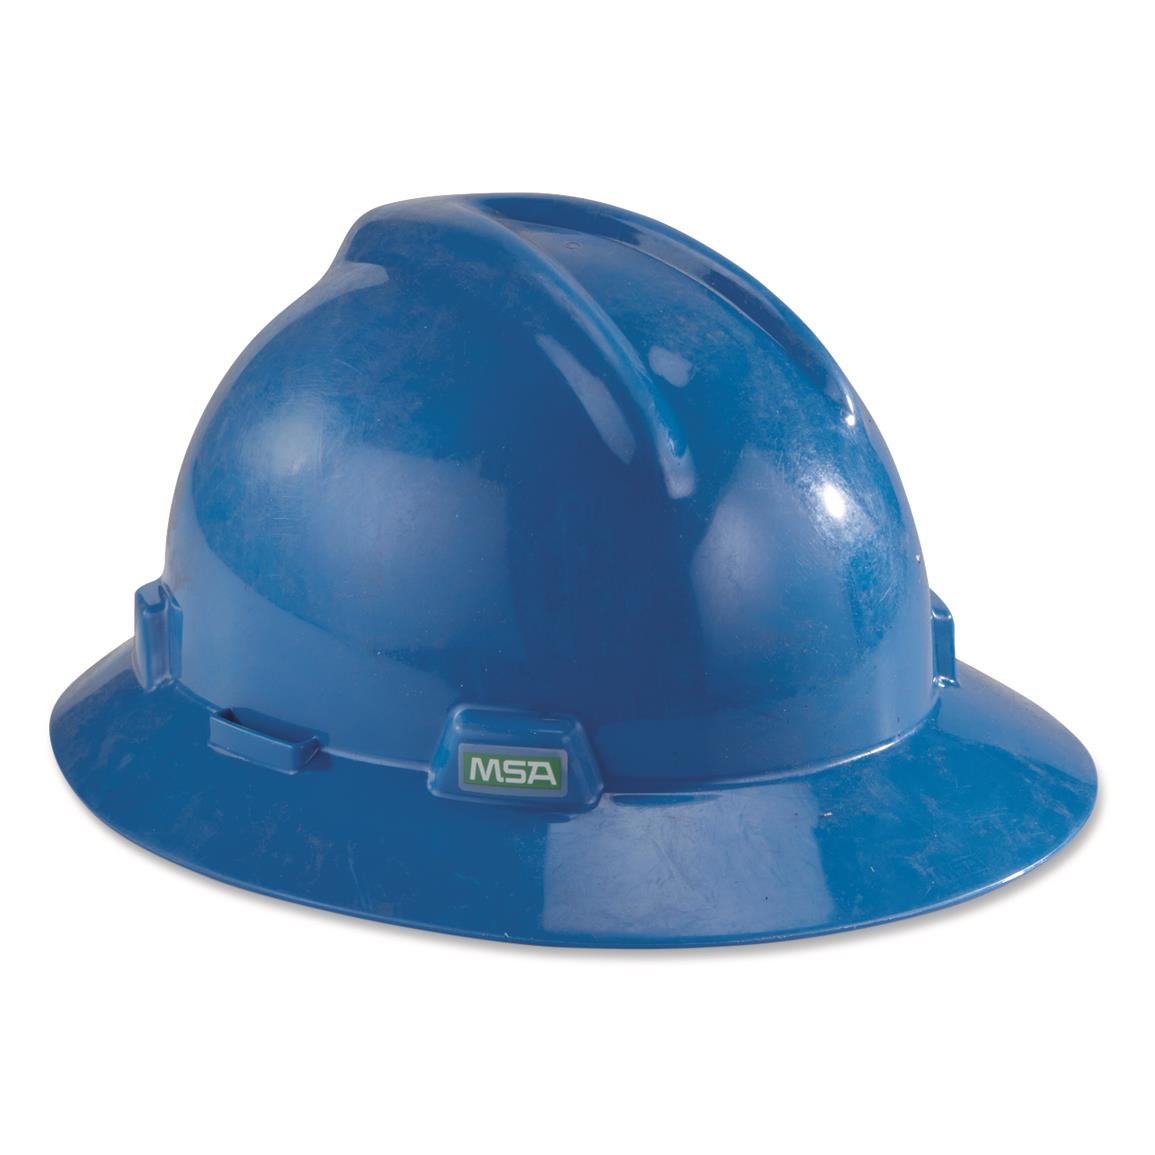 U.S. Military Surplus Plastic Safety Helmet, New